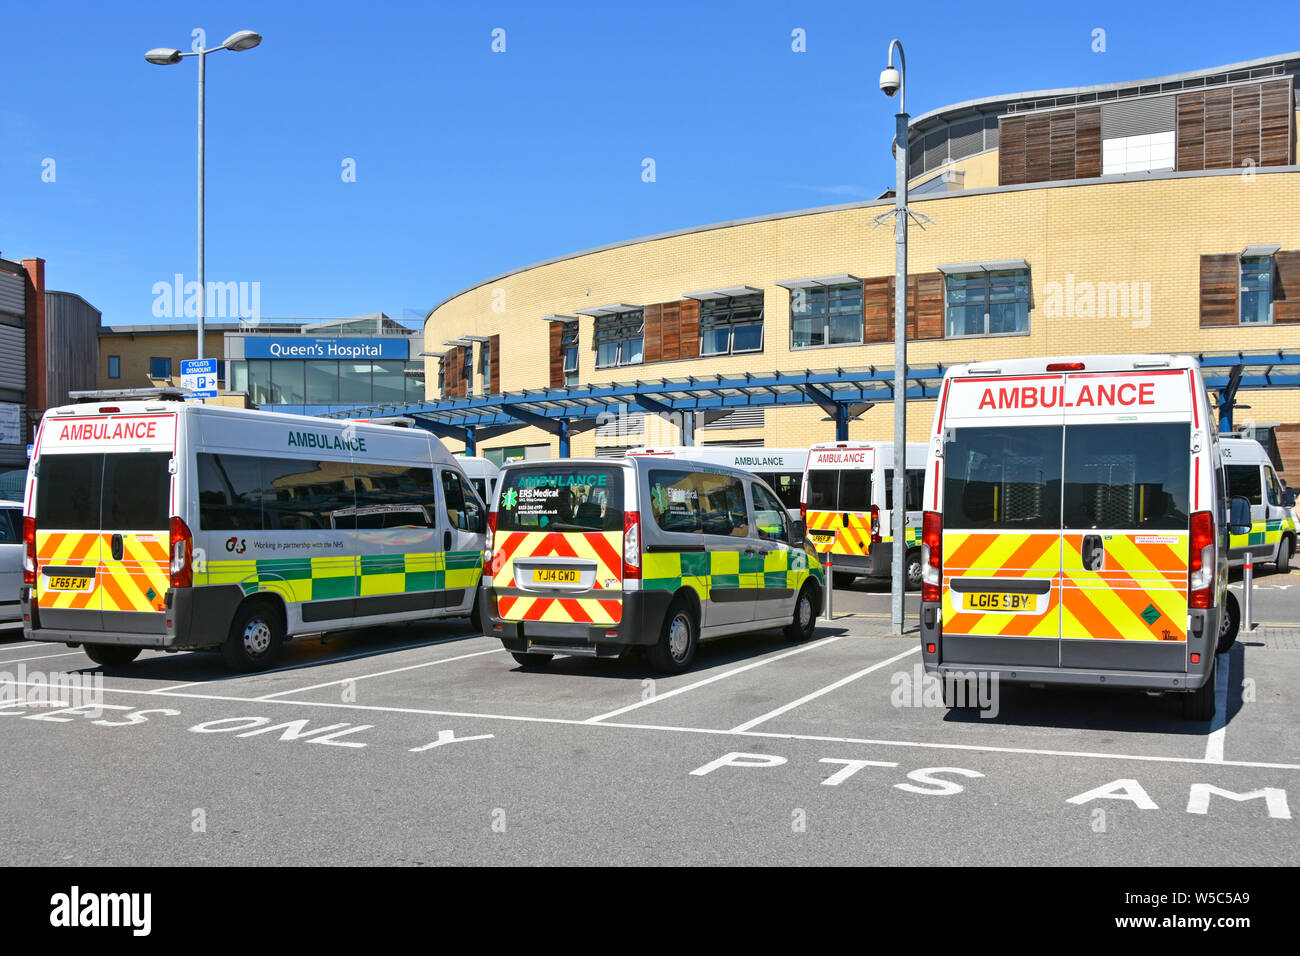 Vue arrière du patient soins divers livraison ambulances garées devant l'entrée principale de l'hôpital NHS Queens Romford Havering East London England UK Banque D'Images